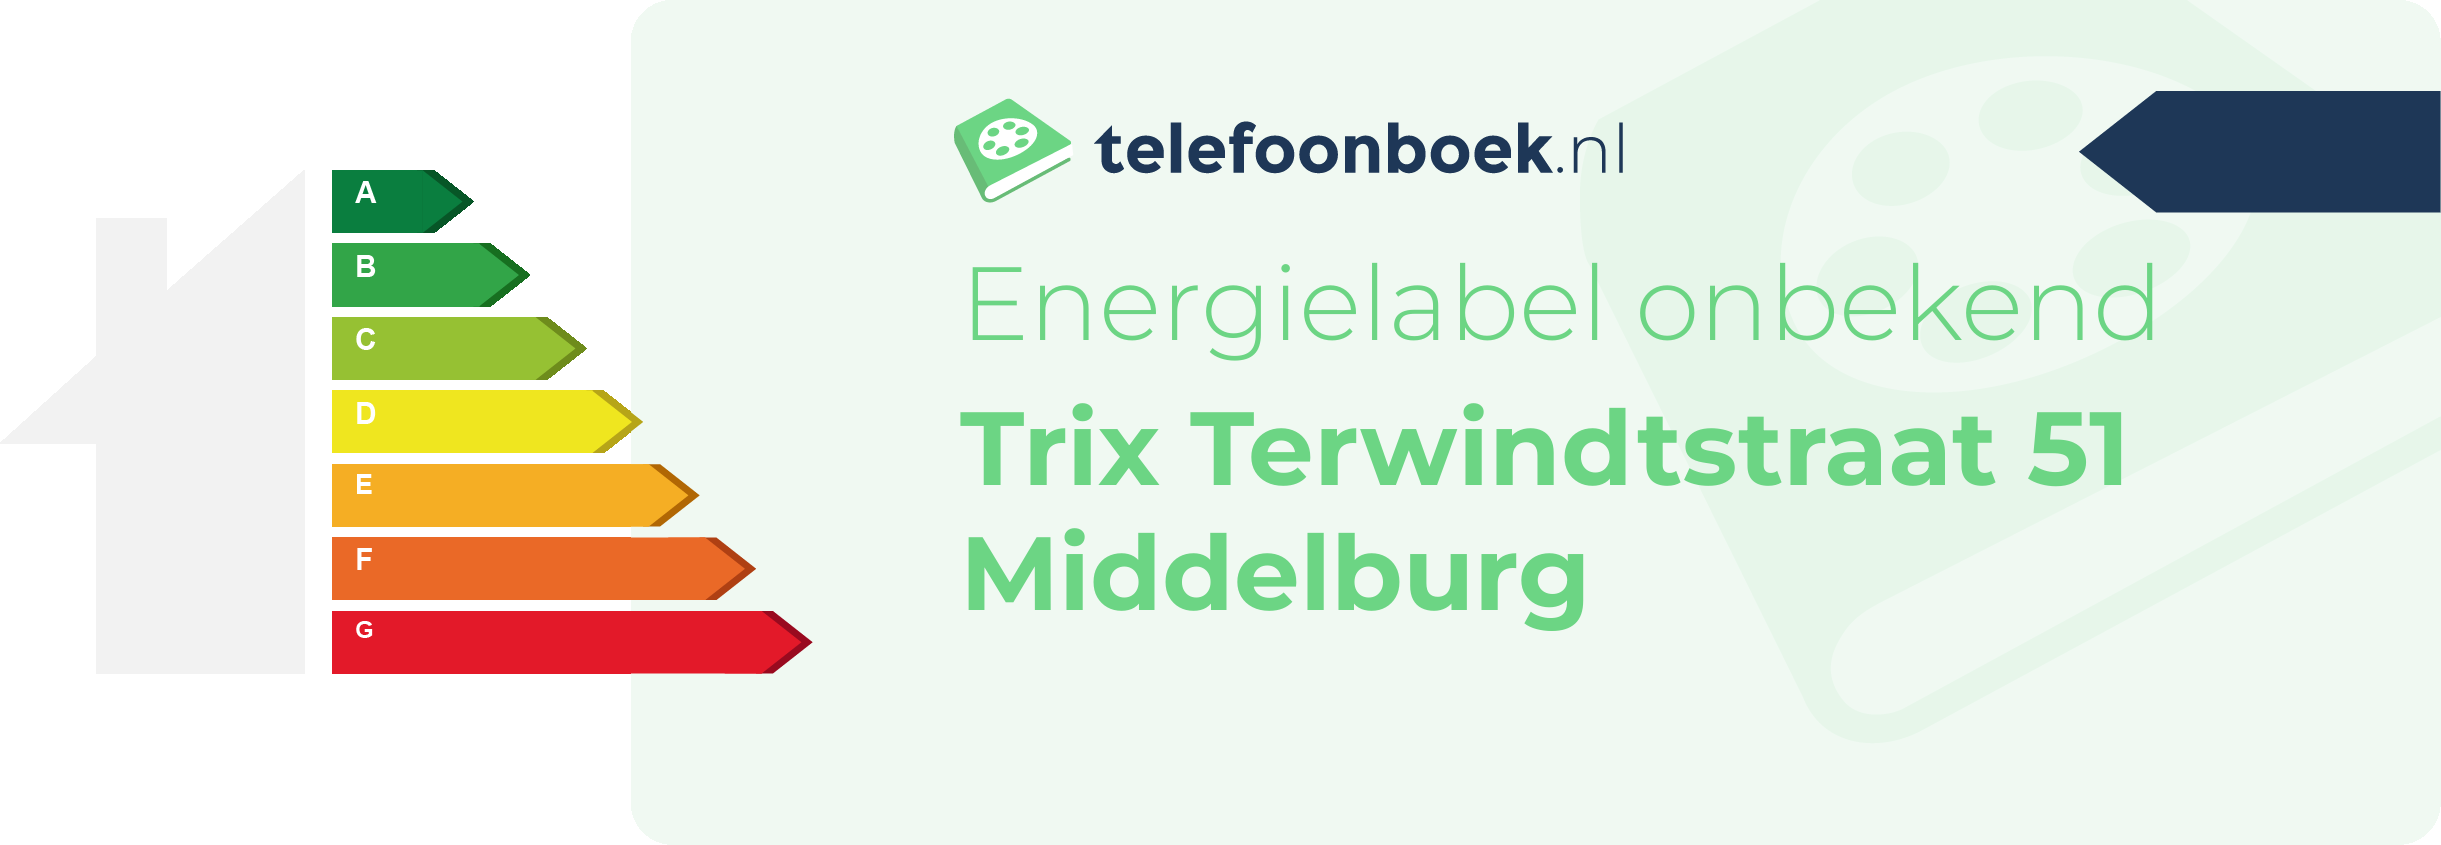 Energielabel Trix Terwindtstraat 51 Middelburg